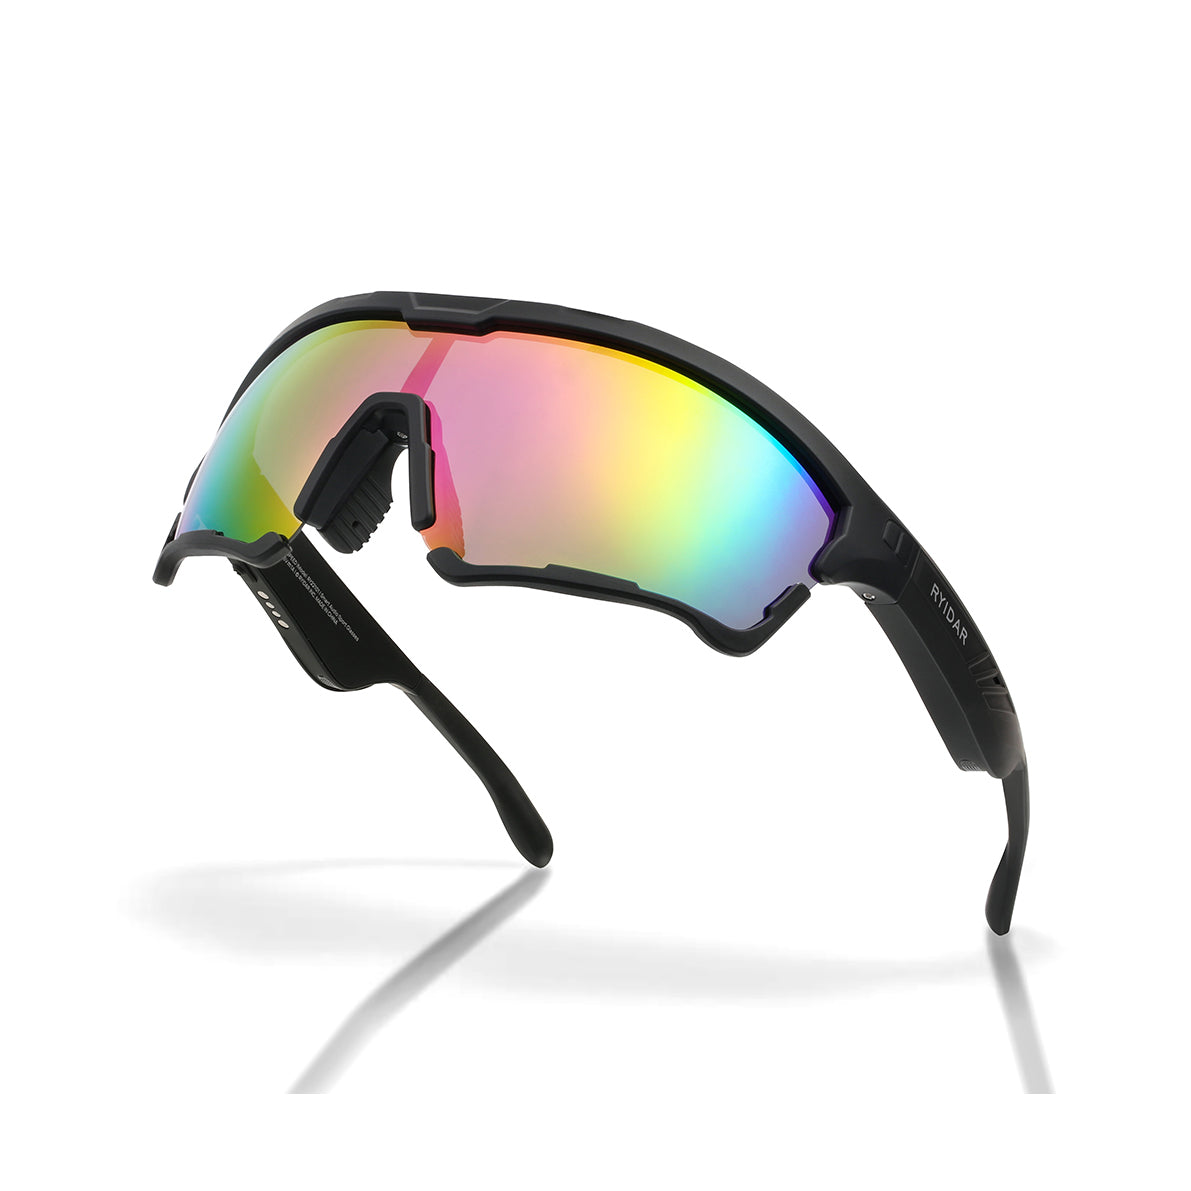 LinkLens SPEED Audio Sport Sunglasses + Custom Prescription Lens